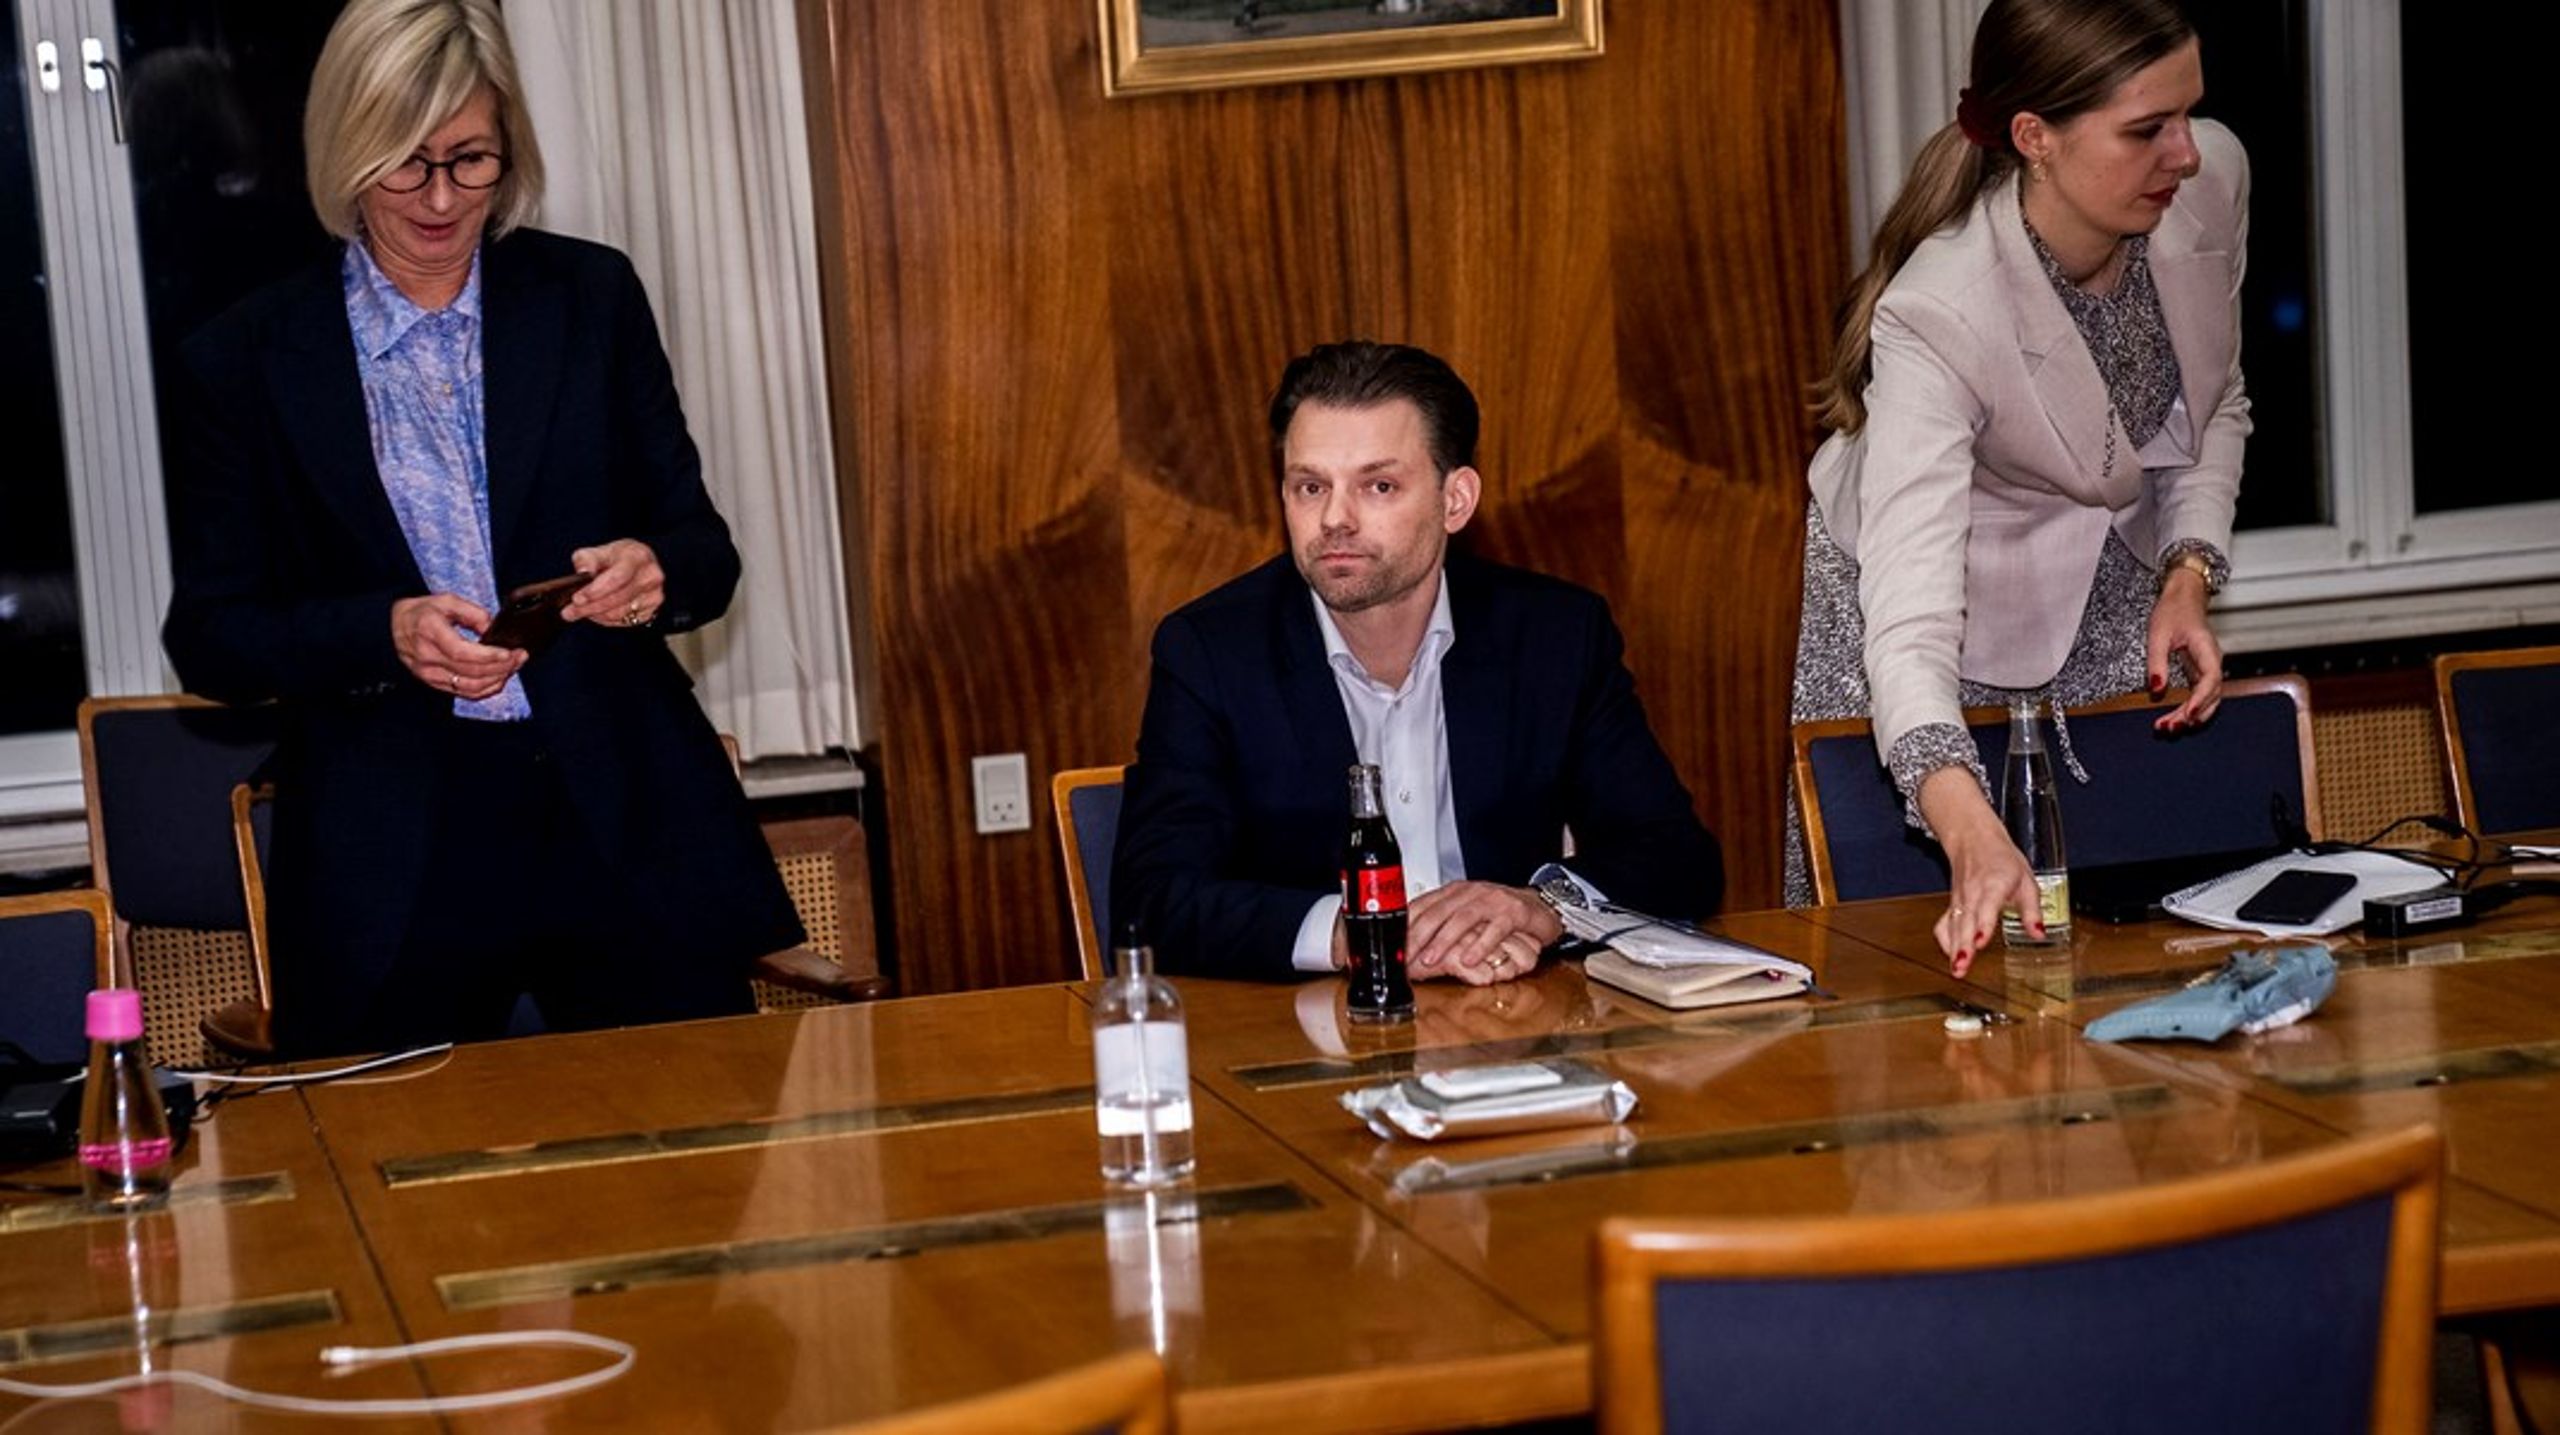 Frederiksberg Kommunes socialdemokratiske borgmester Michael Vindfeldt vil hæve skatten med 150 millioner kroner i sit første budget, siden han vippede Konservative fra magten på rådhuset.